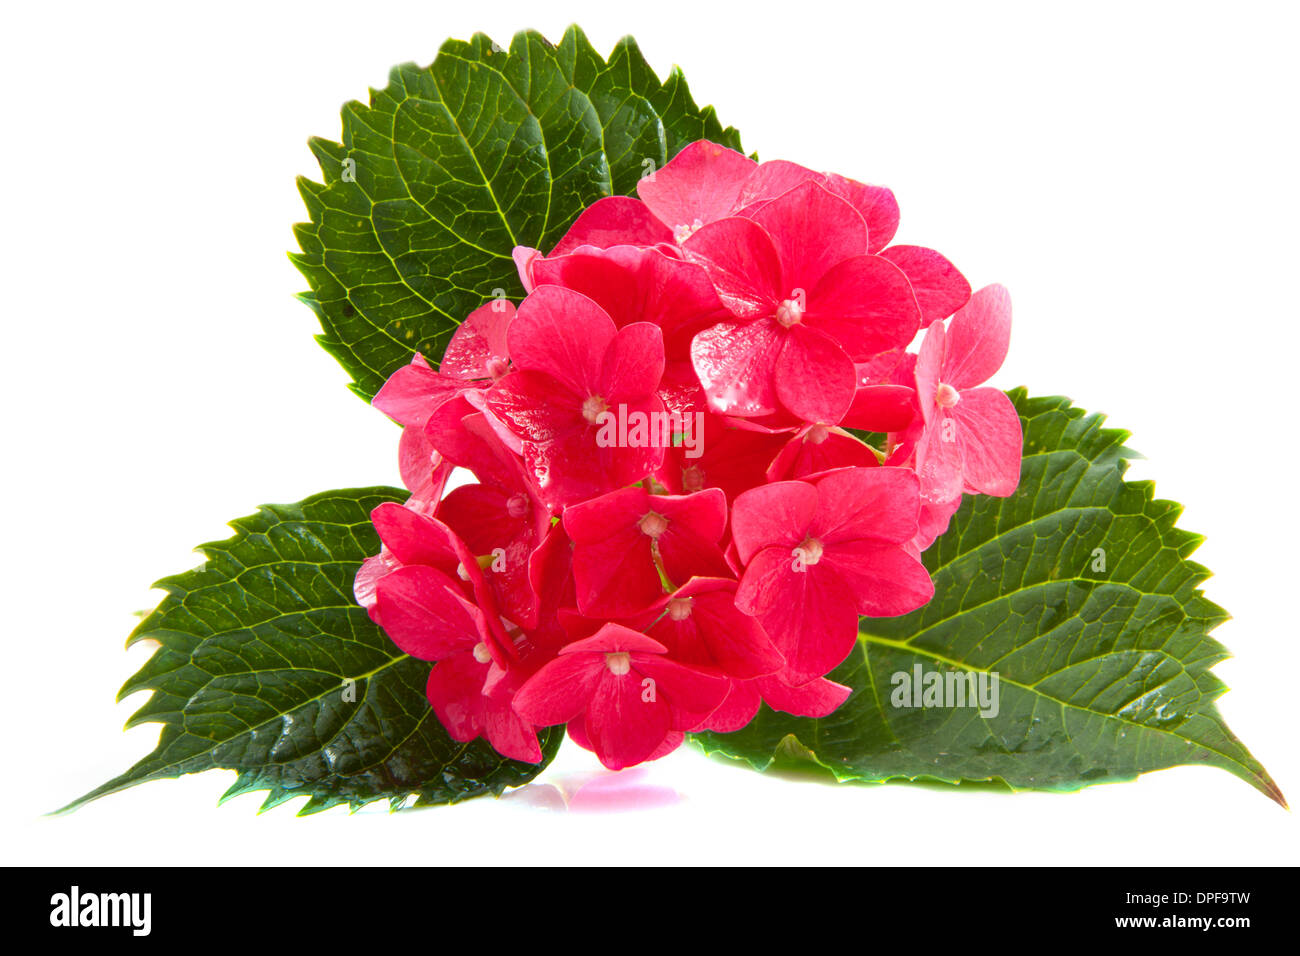 Bel hortensia rose isolé sur fond blanc Banque D'Images